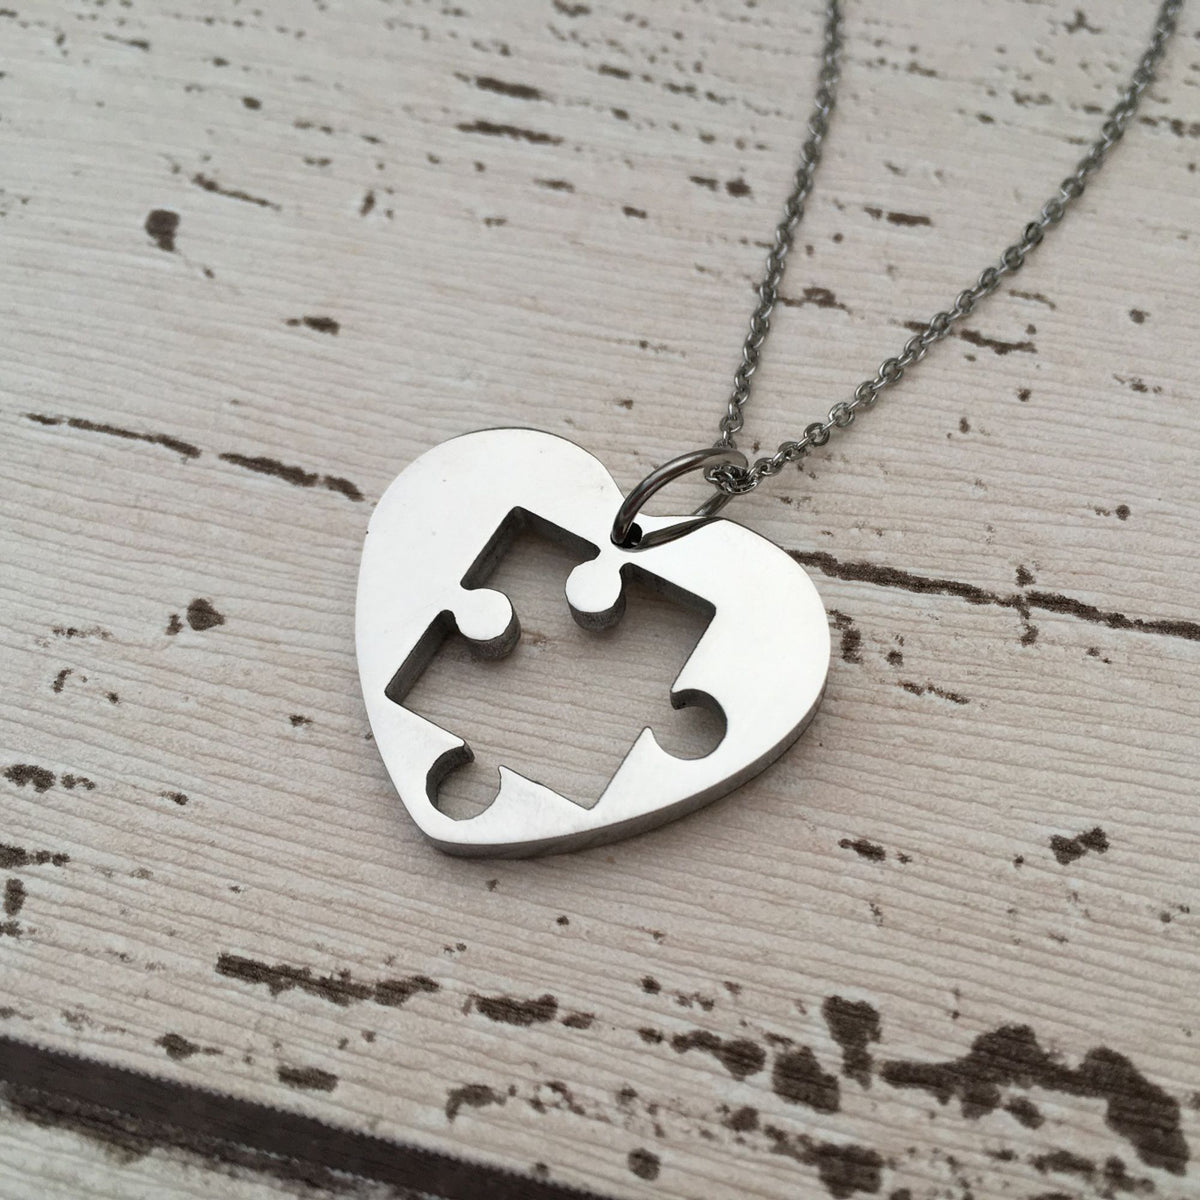 autism necklace for ladies birthday present